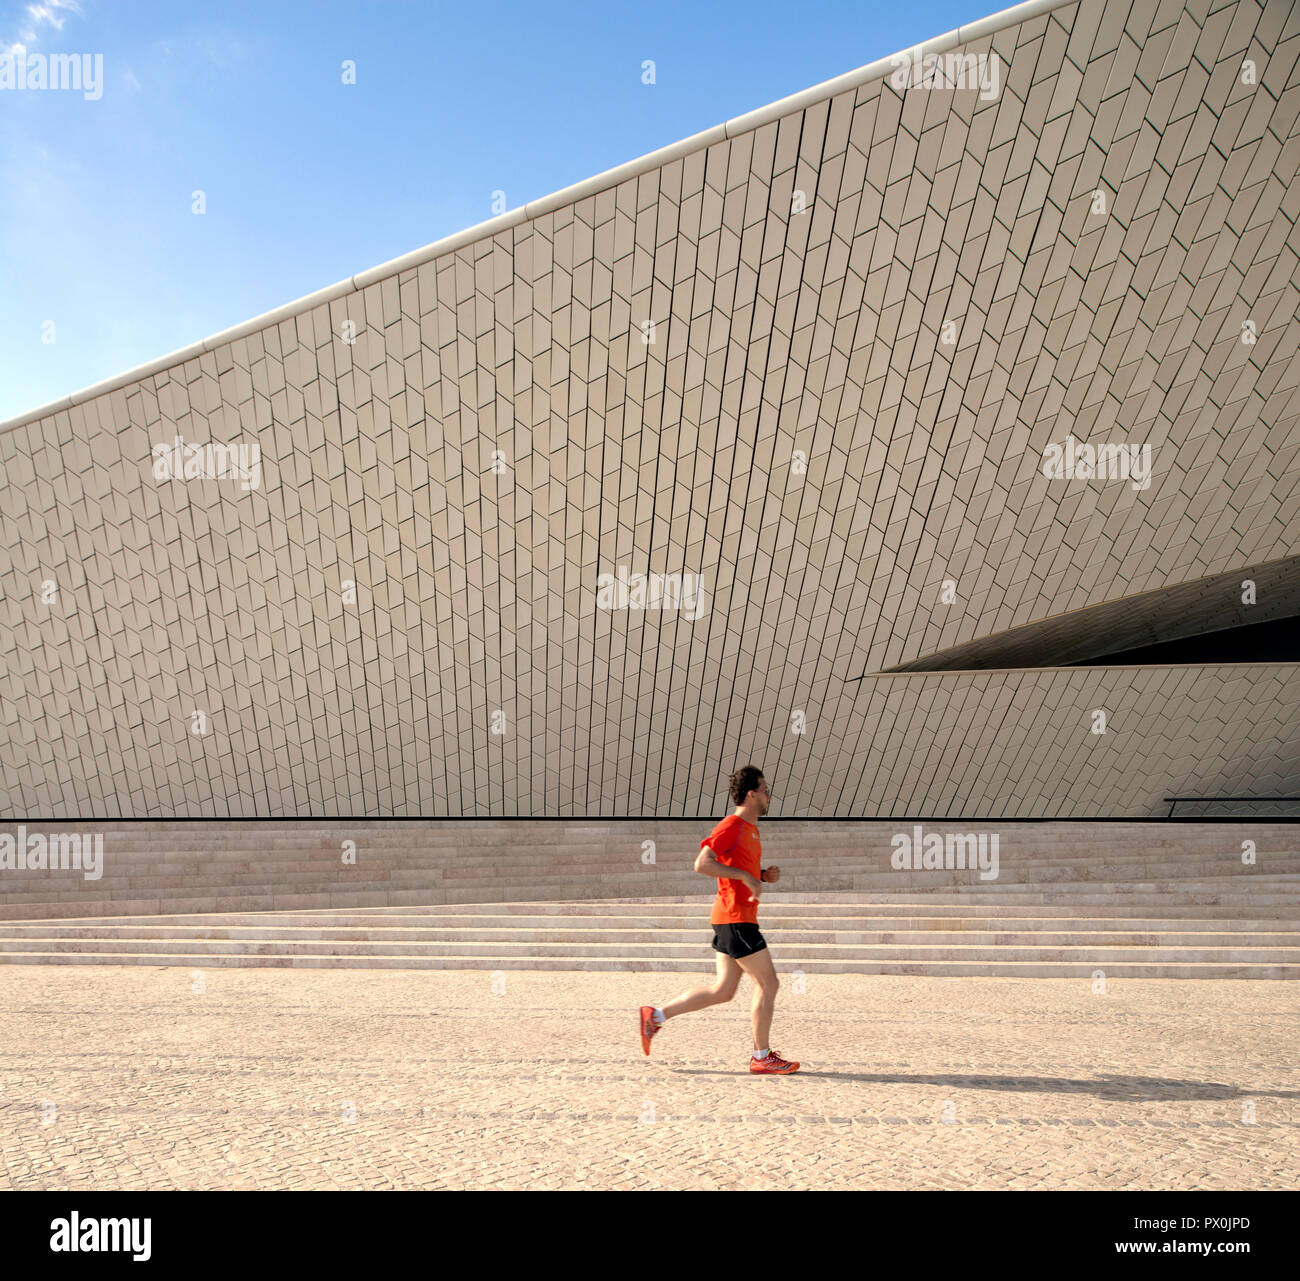 Vue extérieure de la MAAT - Musée d'art, d'architecture et de la Technologie, Lisbonne, Portugal. Homme jogger passé en courant. Banque D'Images